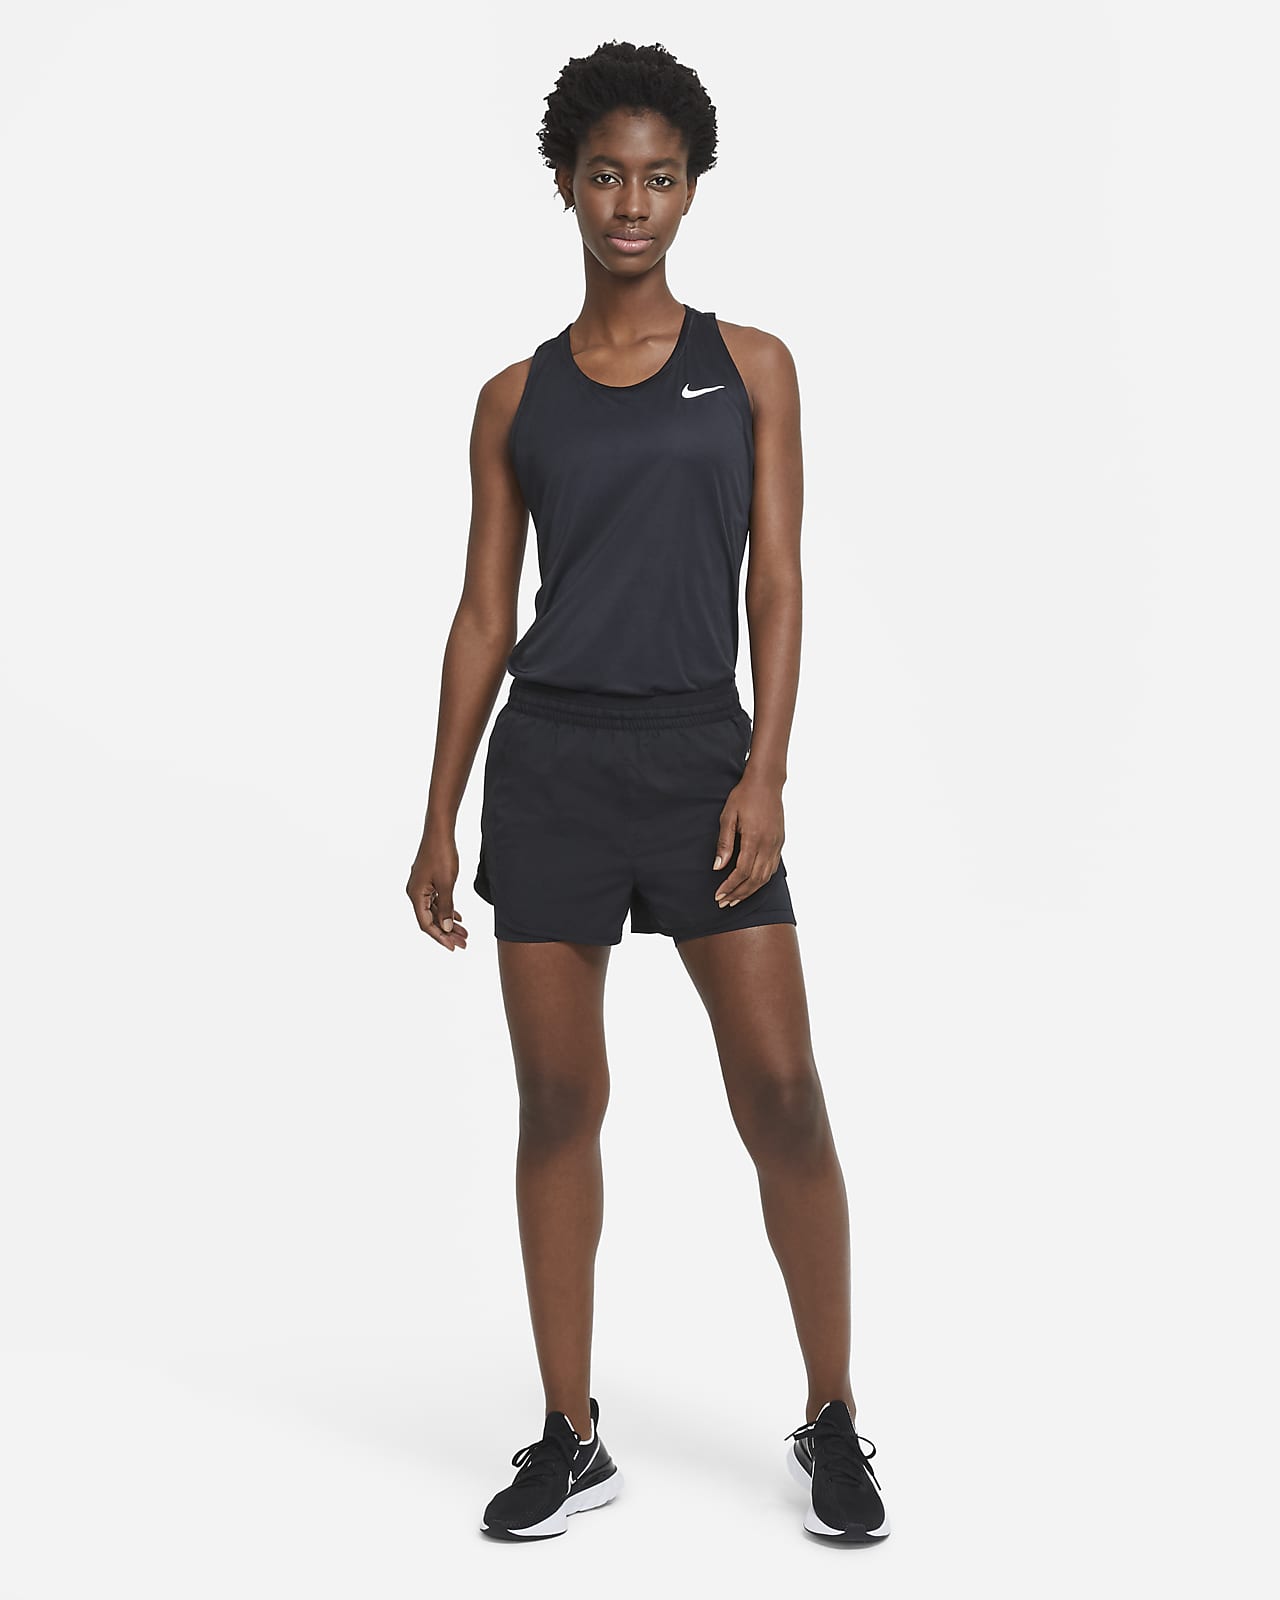 Nike Women's Tempo Running Shorts $ 30